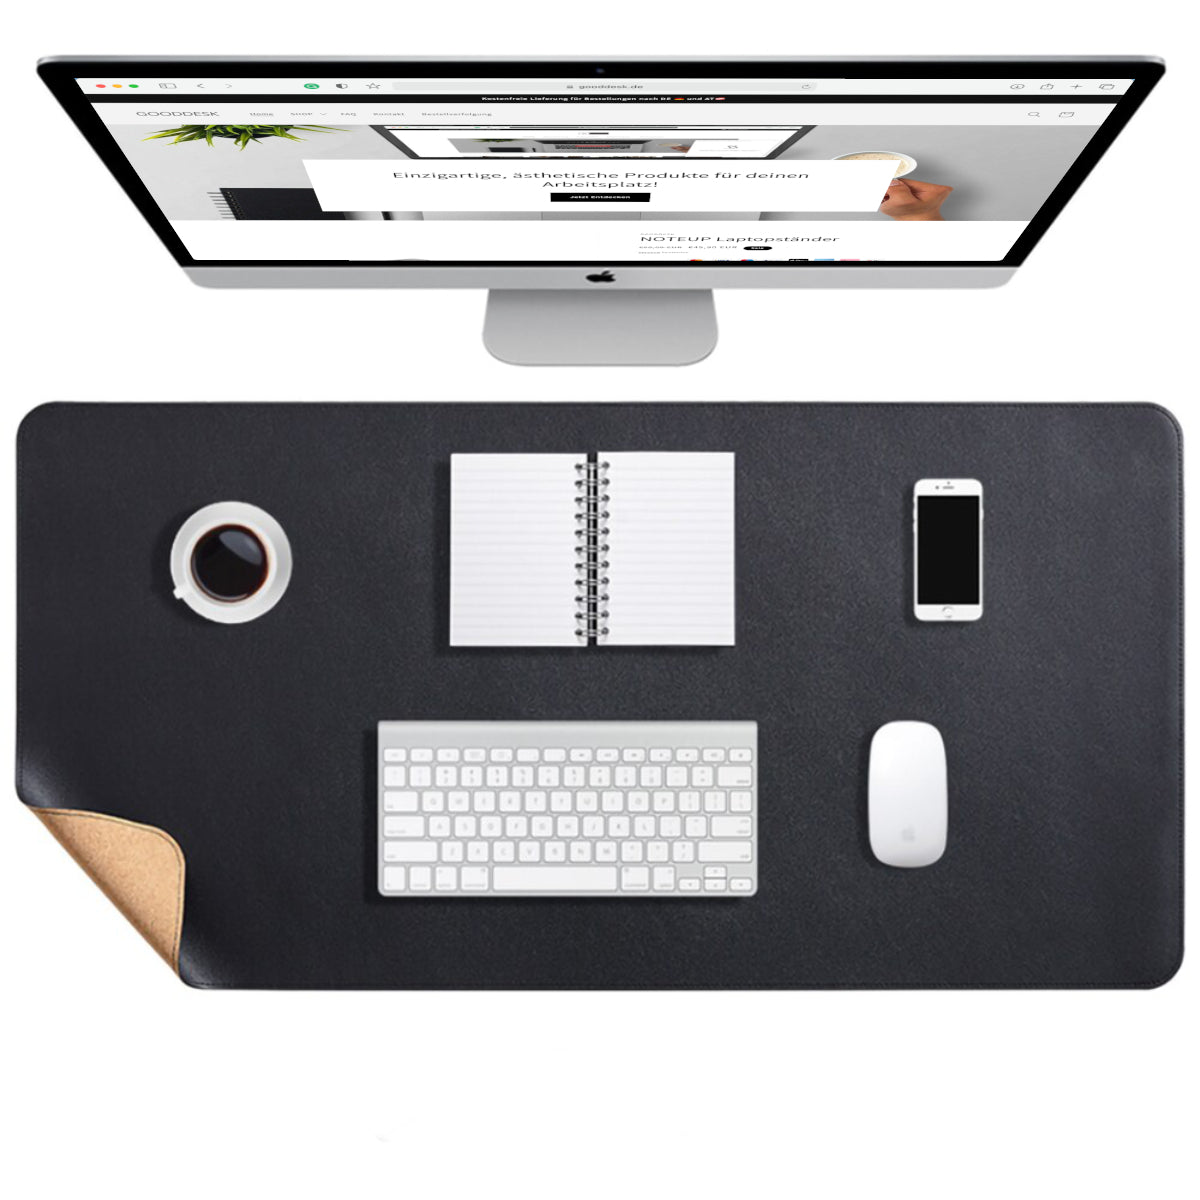 Korkmatte Kork Schreibtischunterlage nachhaltig Eingangsbild shoppen gooddesk schwarz Wählbild